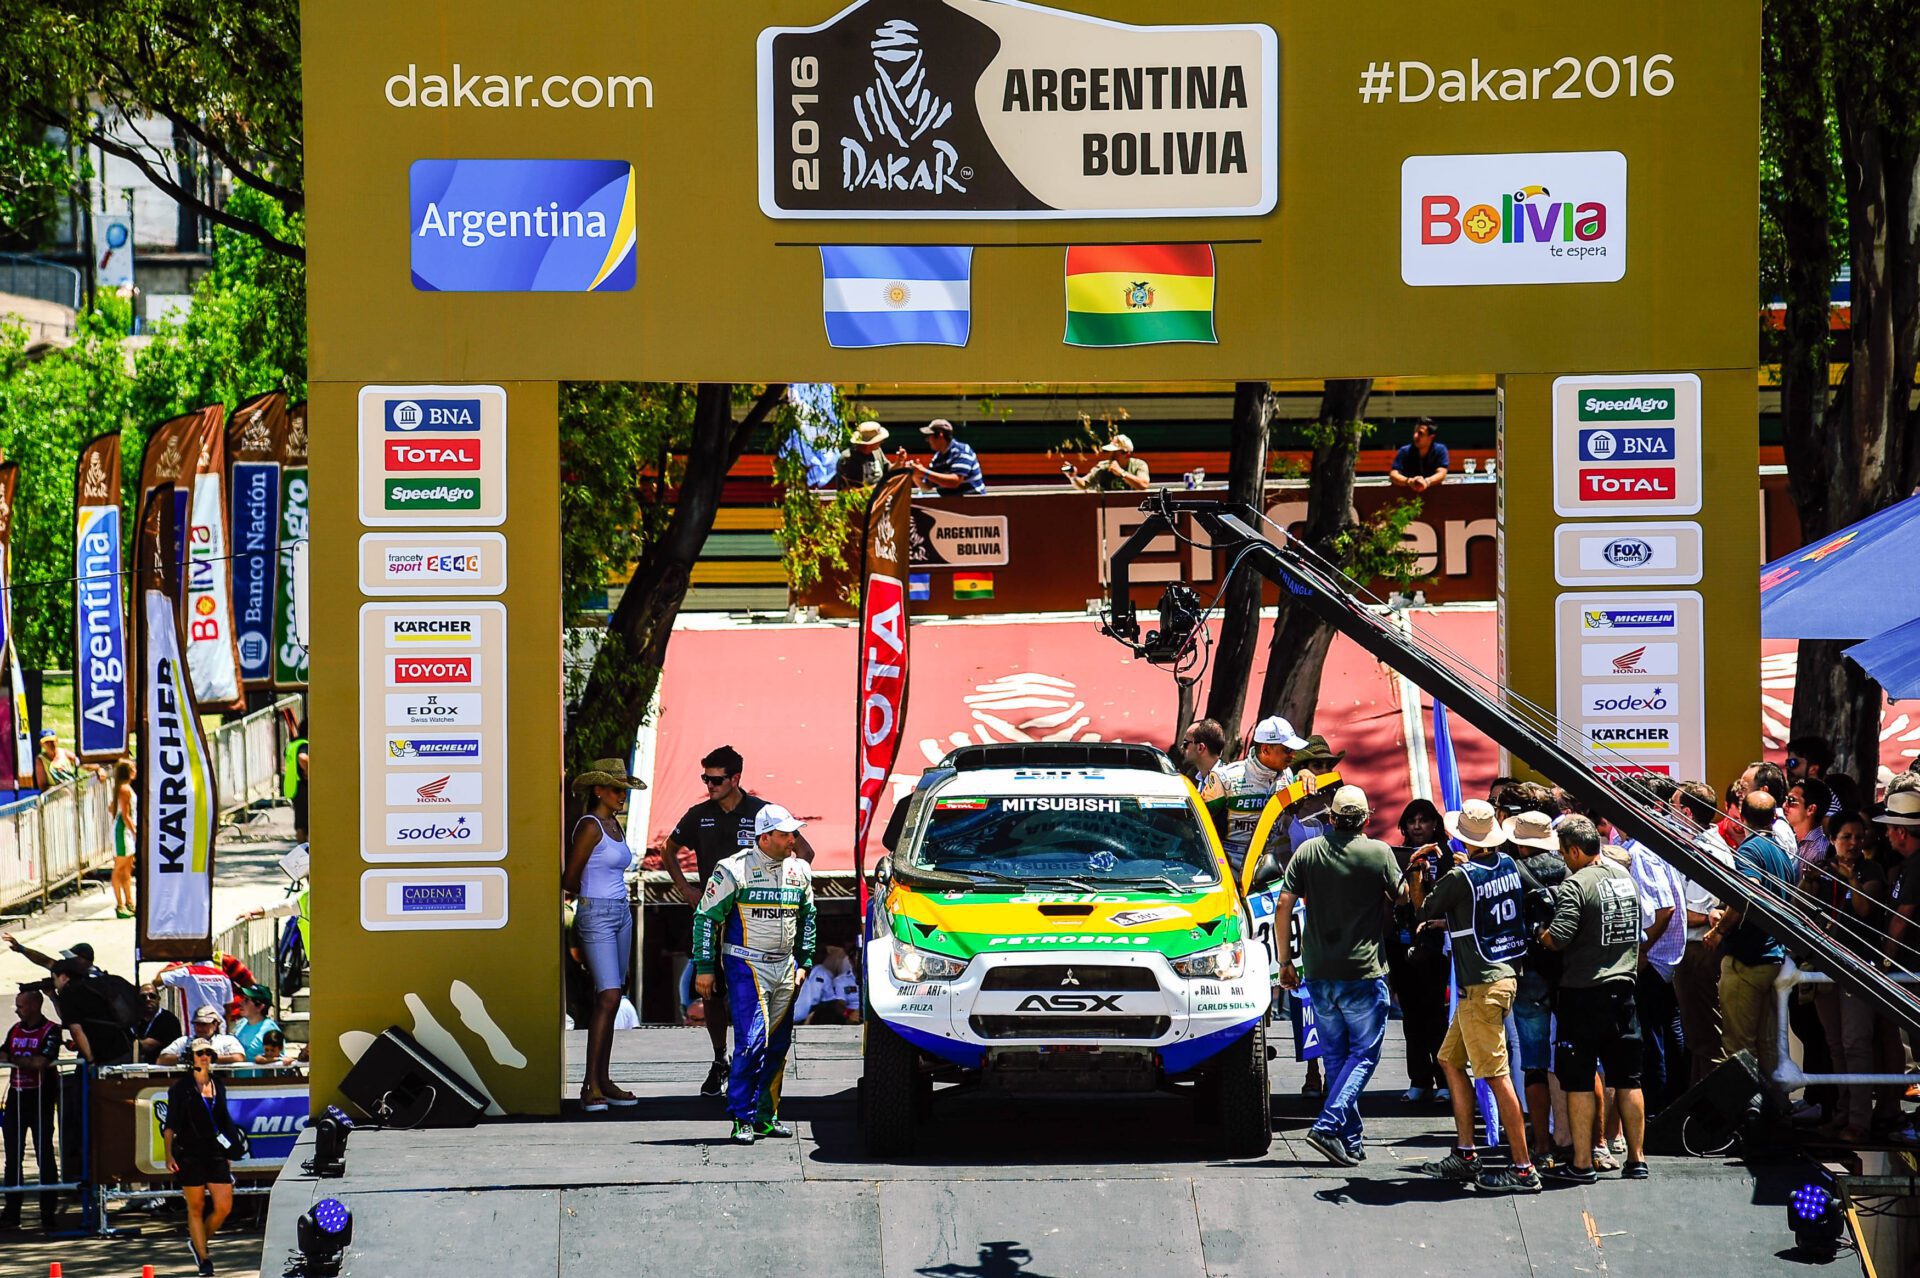 Carlos Sousa iniciou este sábado o 17.º Dakar da sua carreira com um 18.º lugar no Prólogo